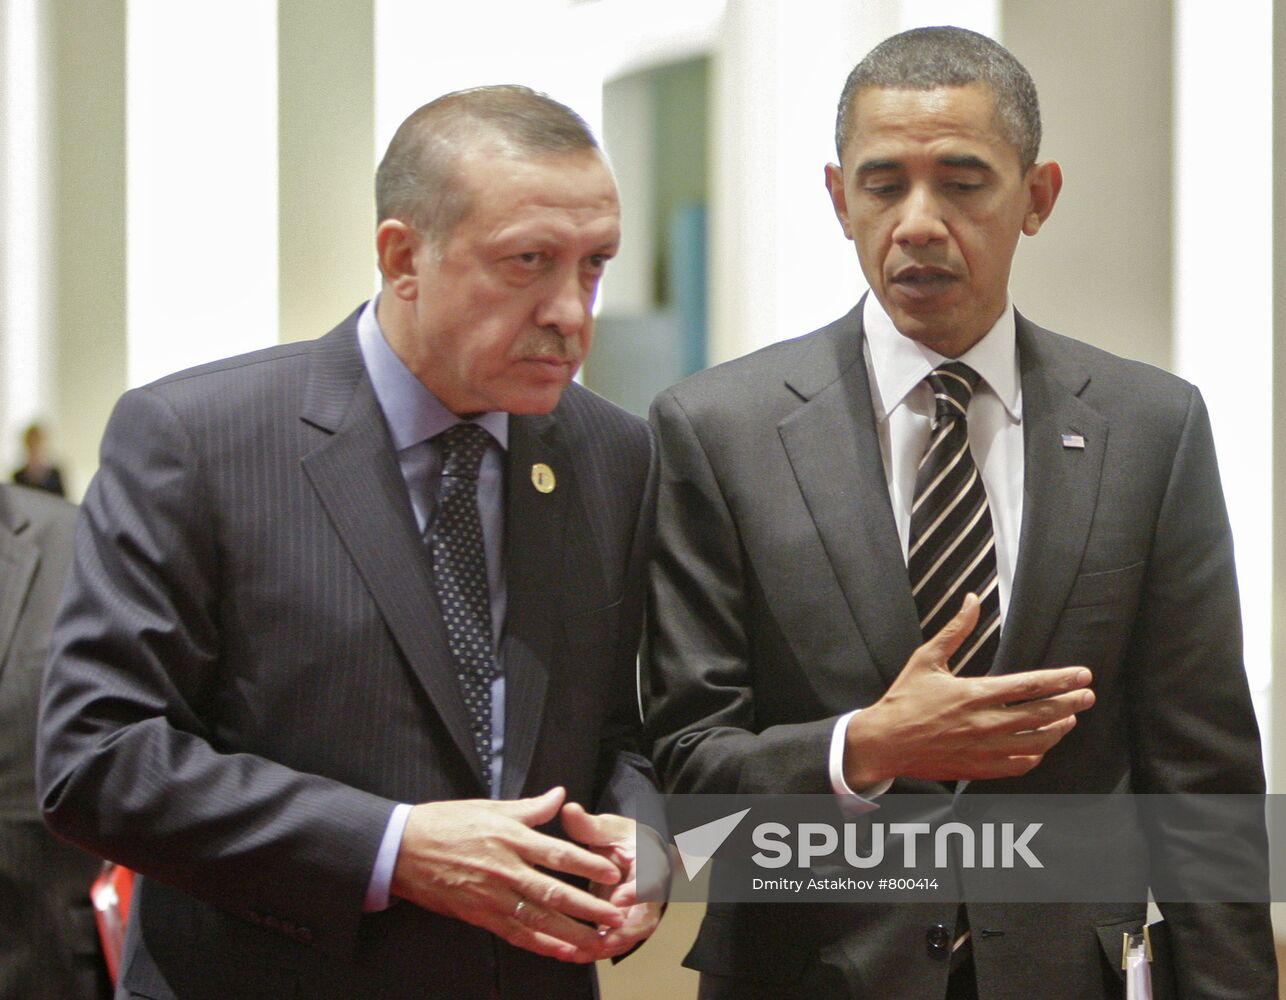 Recep Tayyip Erdogan and Barack Obama at G20 summit in Seoul